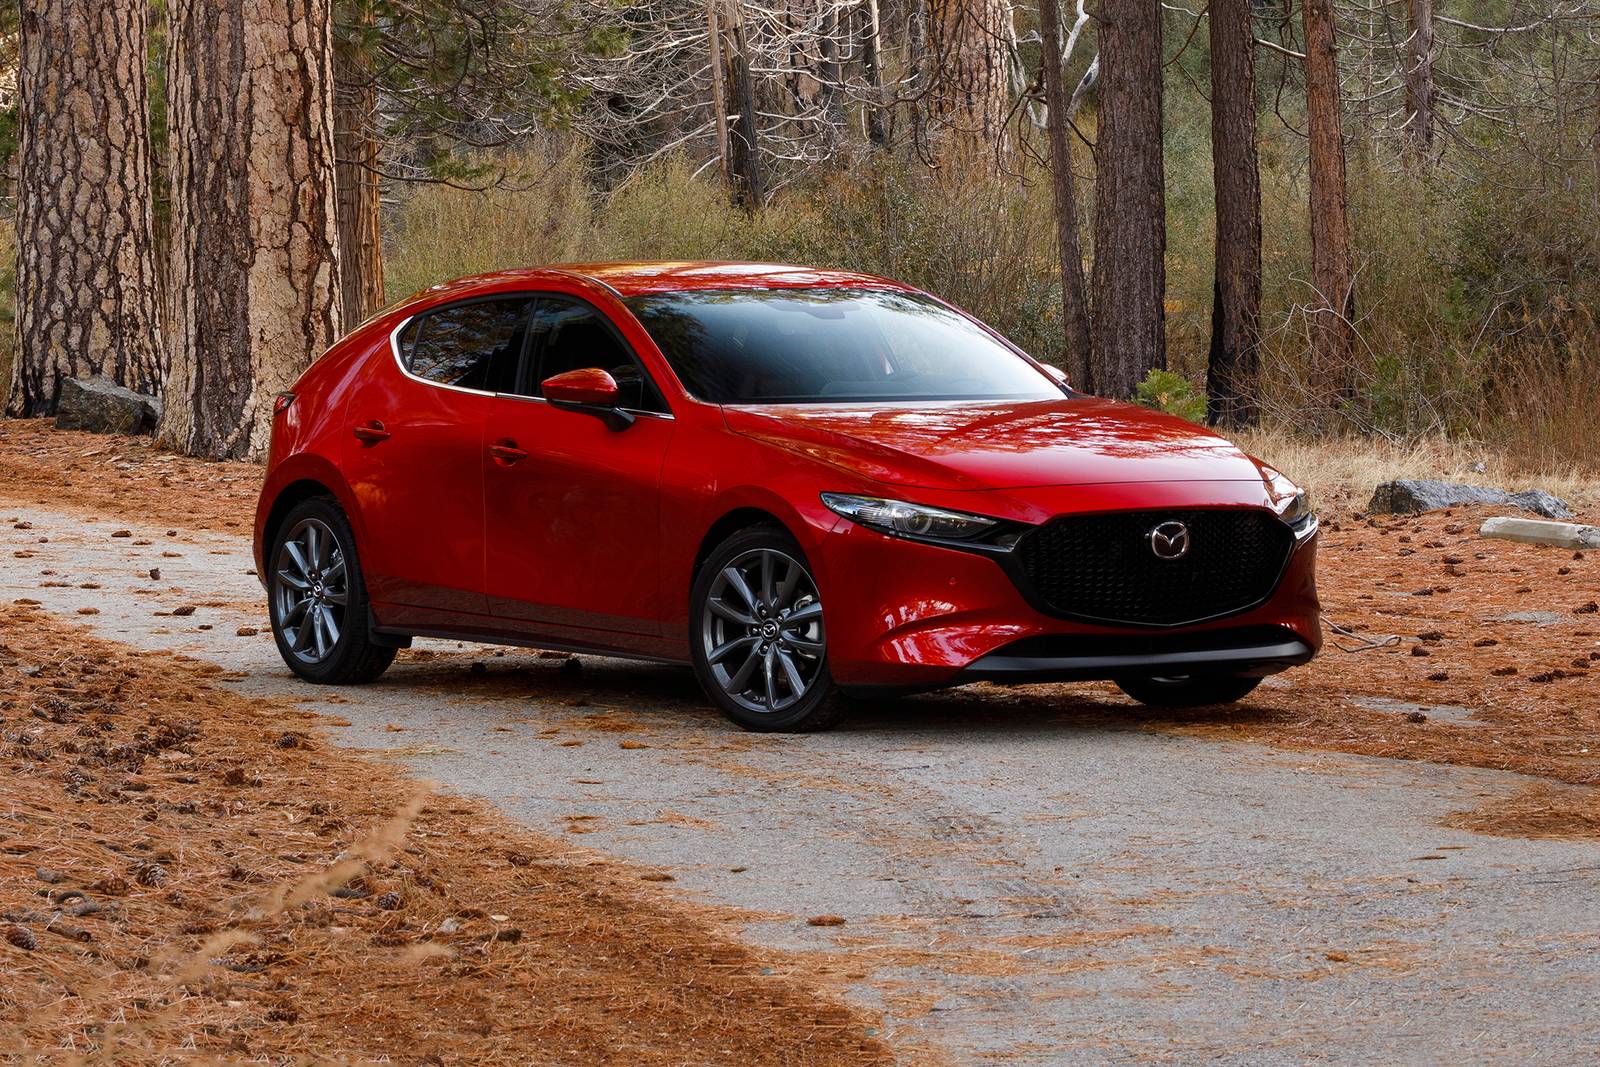 Used 2019 Mazda 3 Hatchback Review | Edmunds